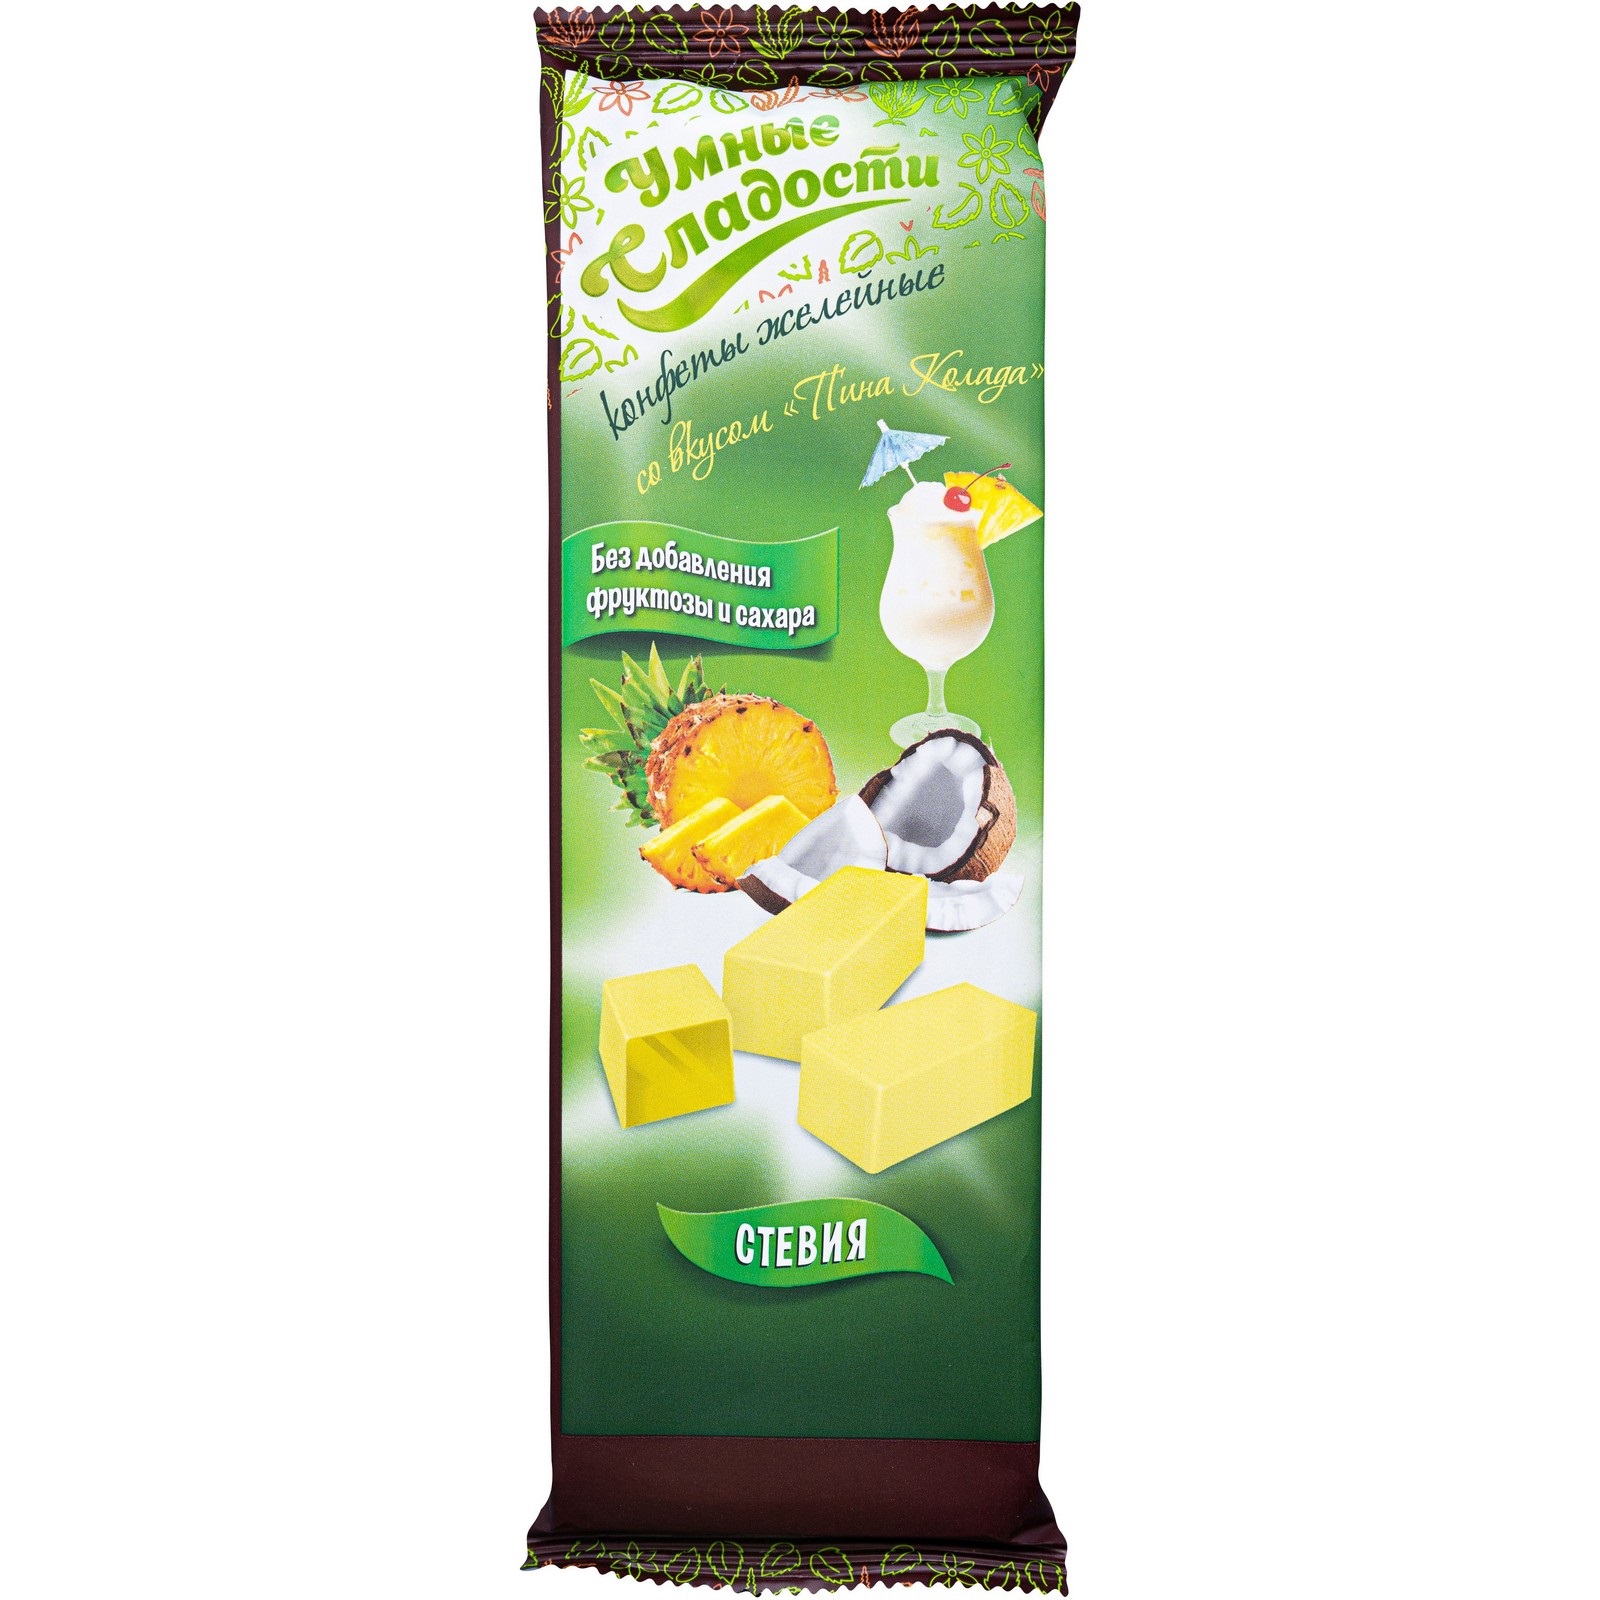 Конфеты Умные сладости желейные, со вкусом пина-колада, 90 г х 2 шт